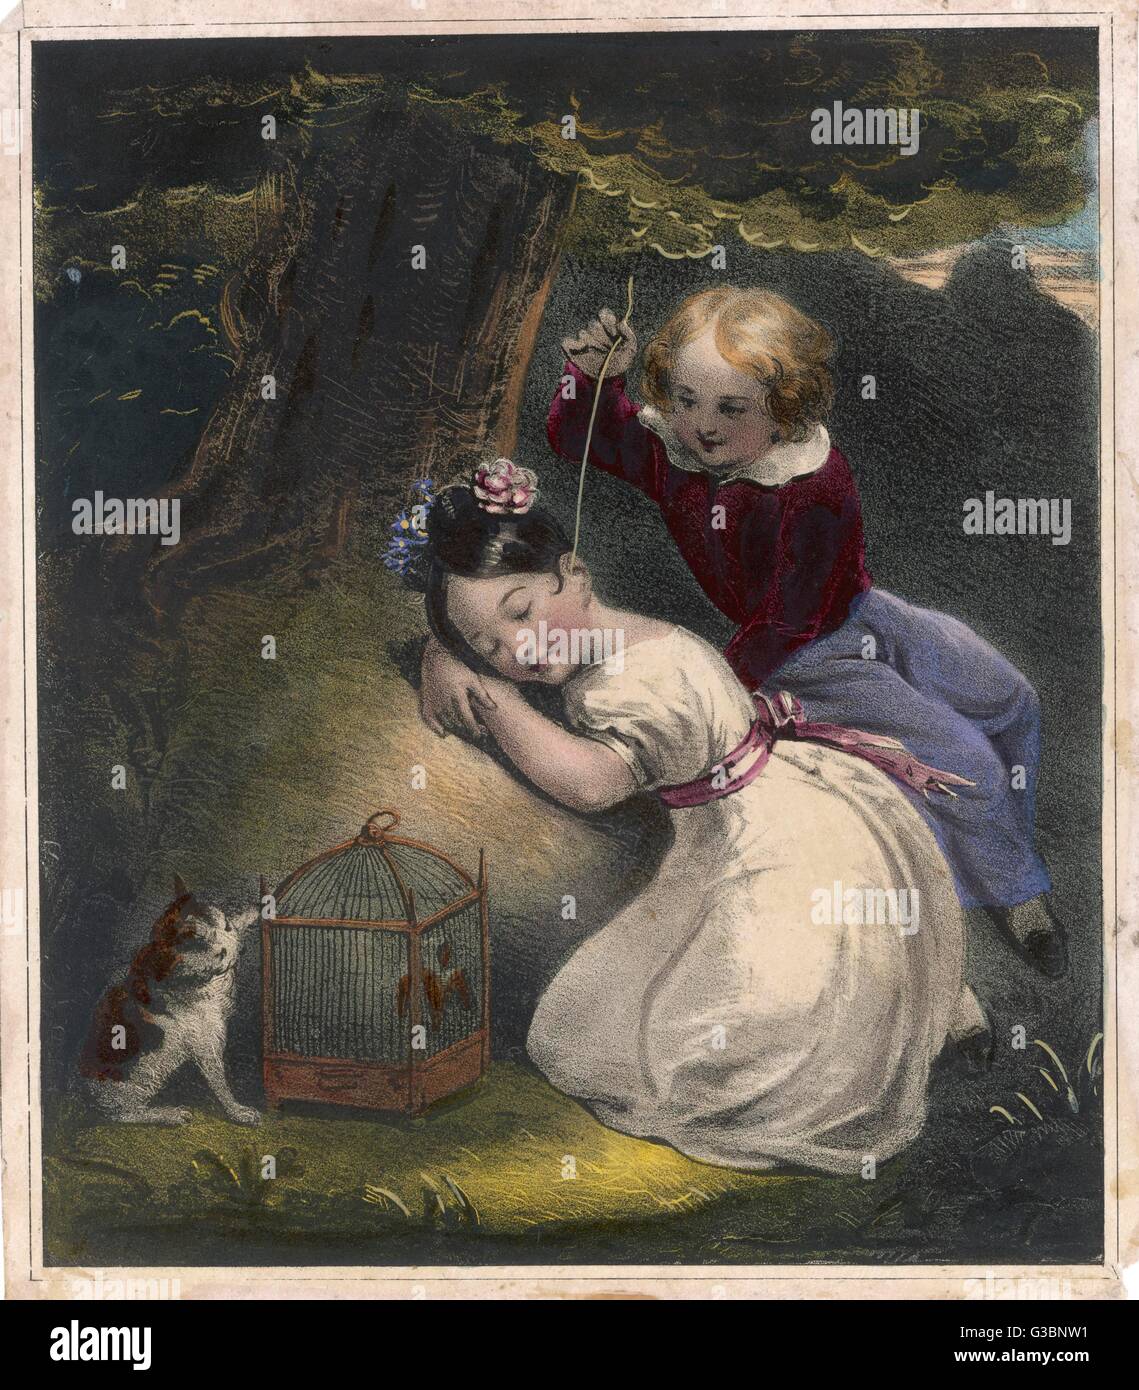 Ein frecher kleiner Junge kitzelt verschmitzt das Ohr ein schlafendes Mädchen mit einem langen Strohhalm. Eine freche Kätzchen Spiegel sein Verhalten, wie es einen Vogel in einem Käfig quält.     Datum: 1830er Jahre Stockfoto